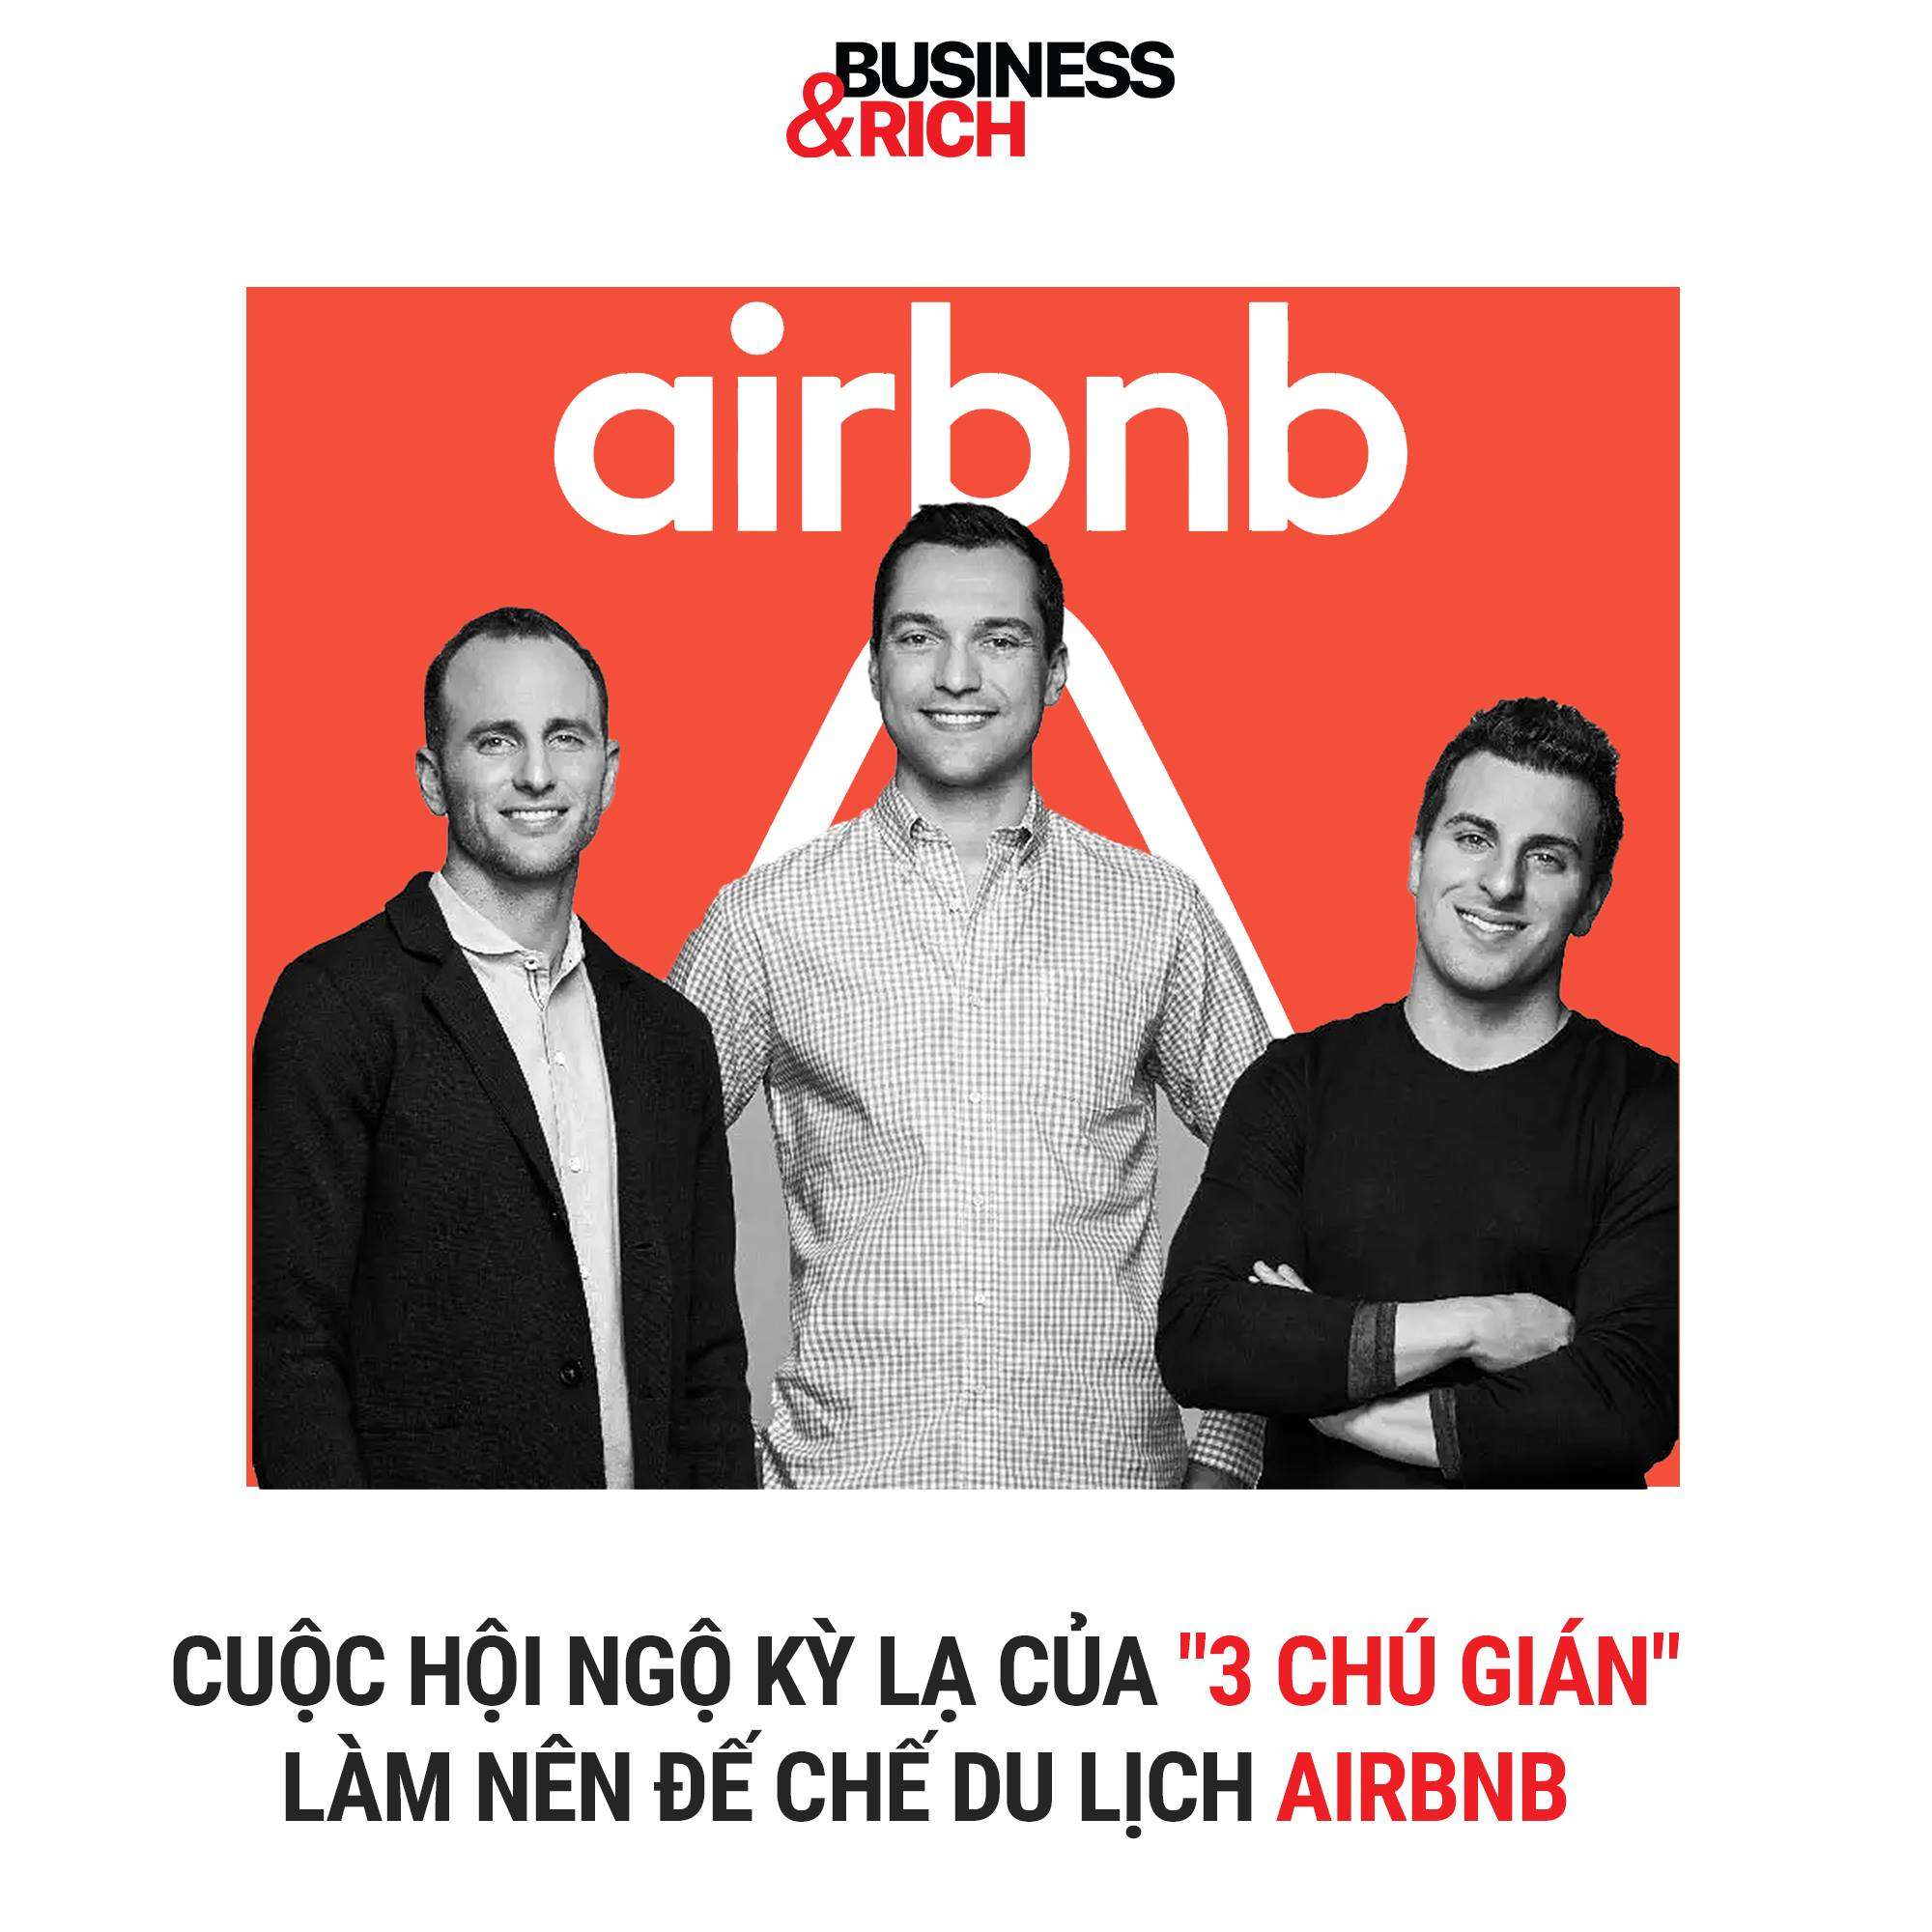 Case study thành công của thương hiệu Airbnb - Làm giàu từ kinh doanh